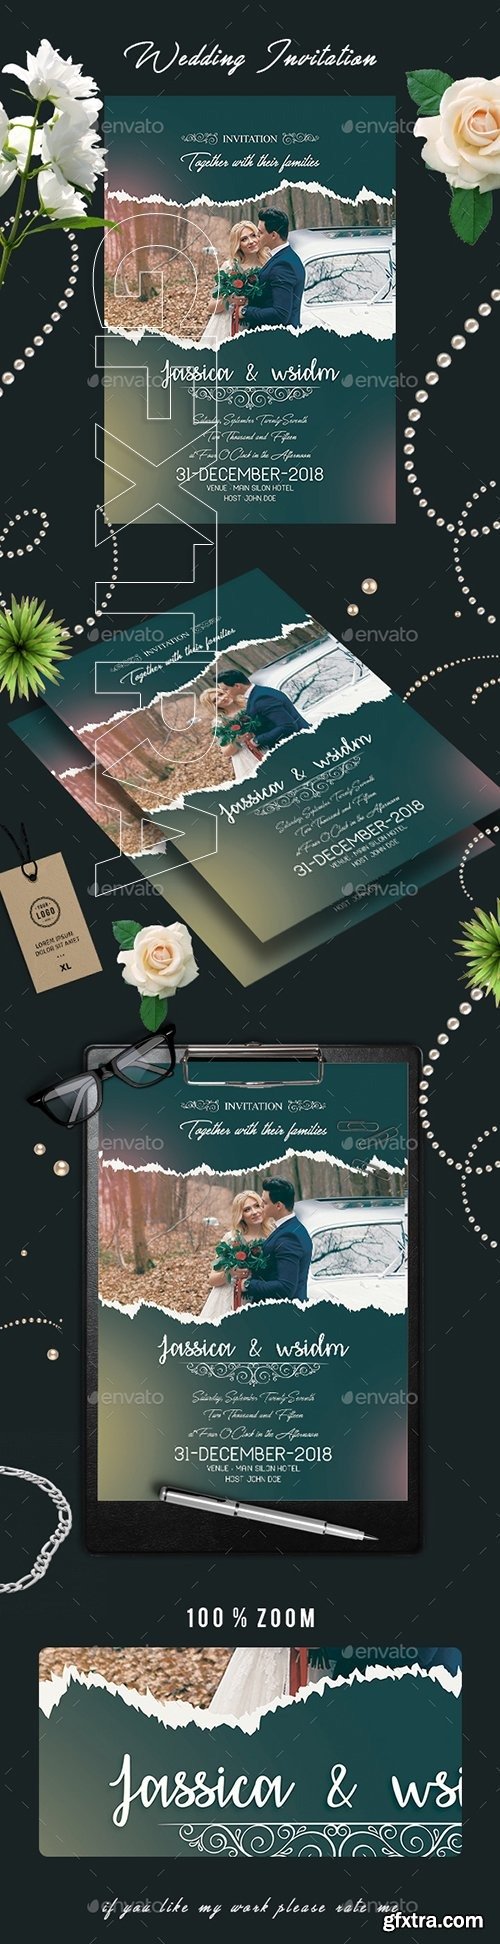 GraphicRiver - Wedding Invitation Card 22657955